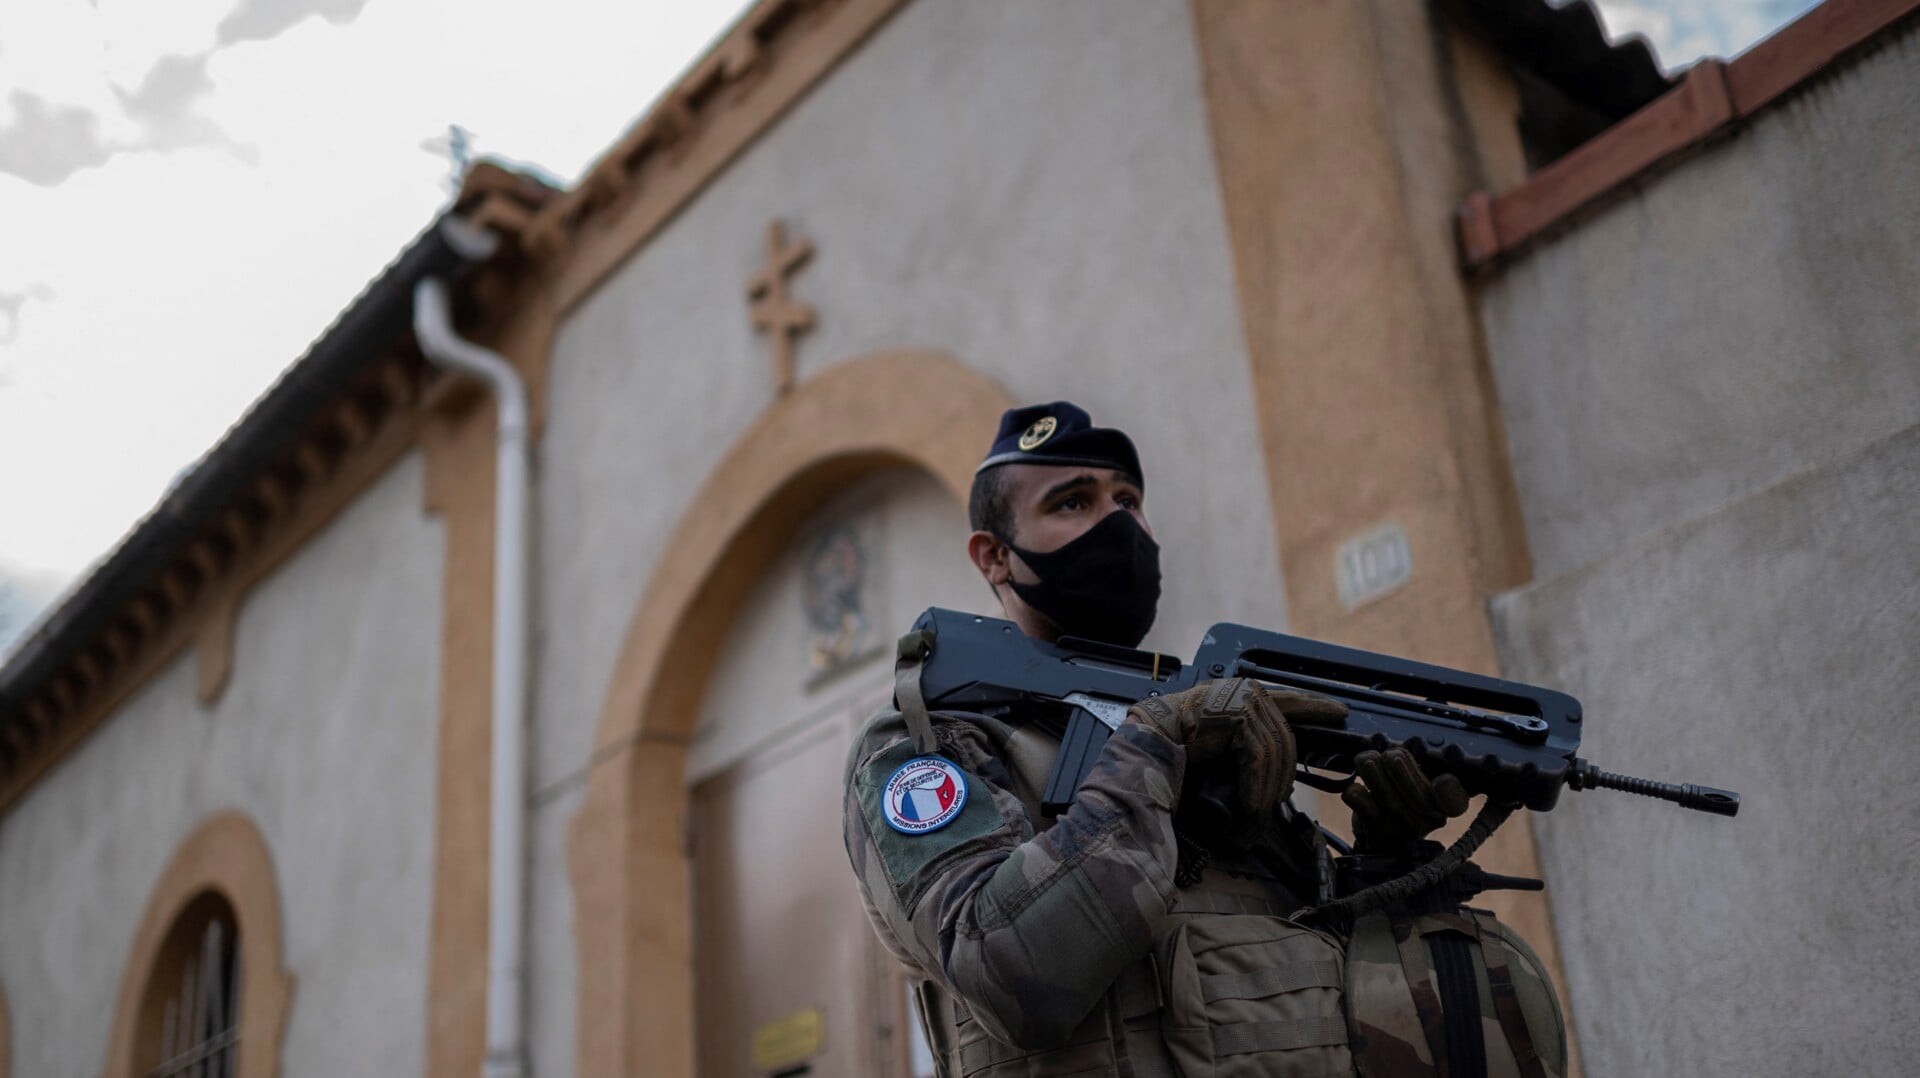 Een Franse militair bij een protestantse kerk in Valence tijdens verhoogde veiligheidsrisico's in november 2020, nadat een terroristische aanslag op een rooms-katholieke kerk in Nice drie levens had gekost.